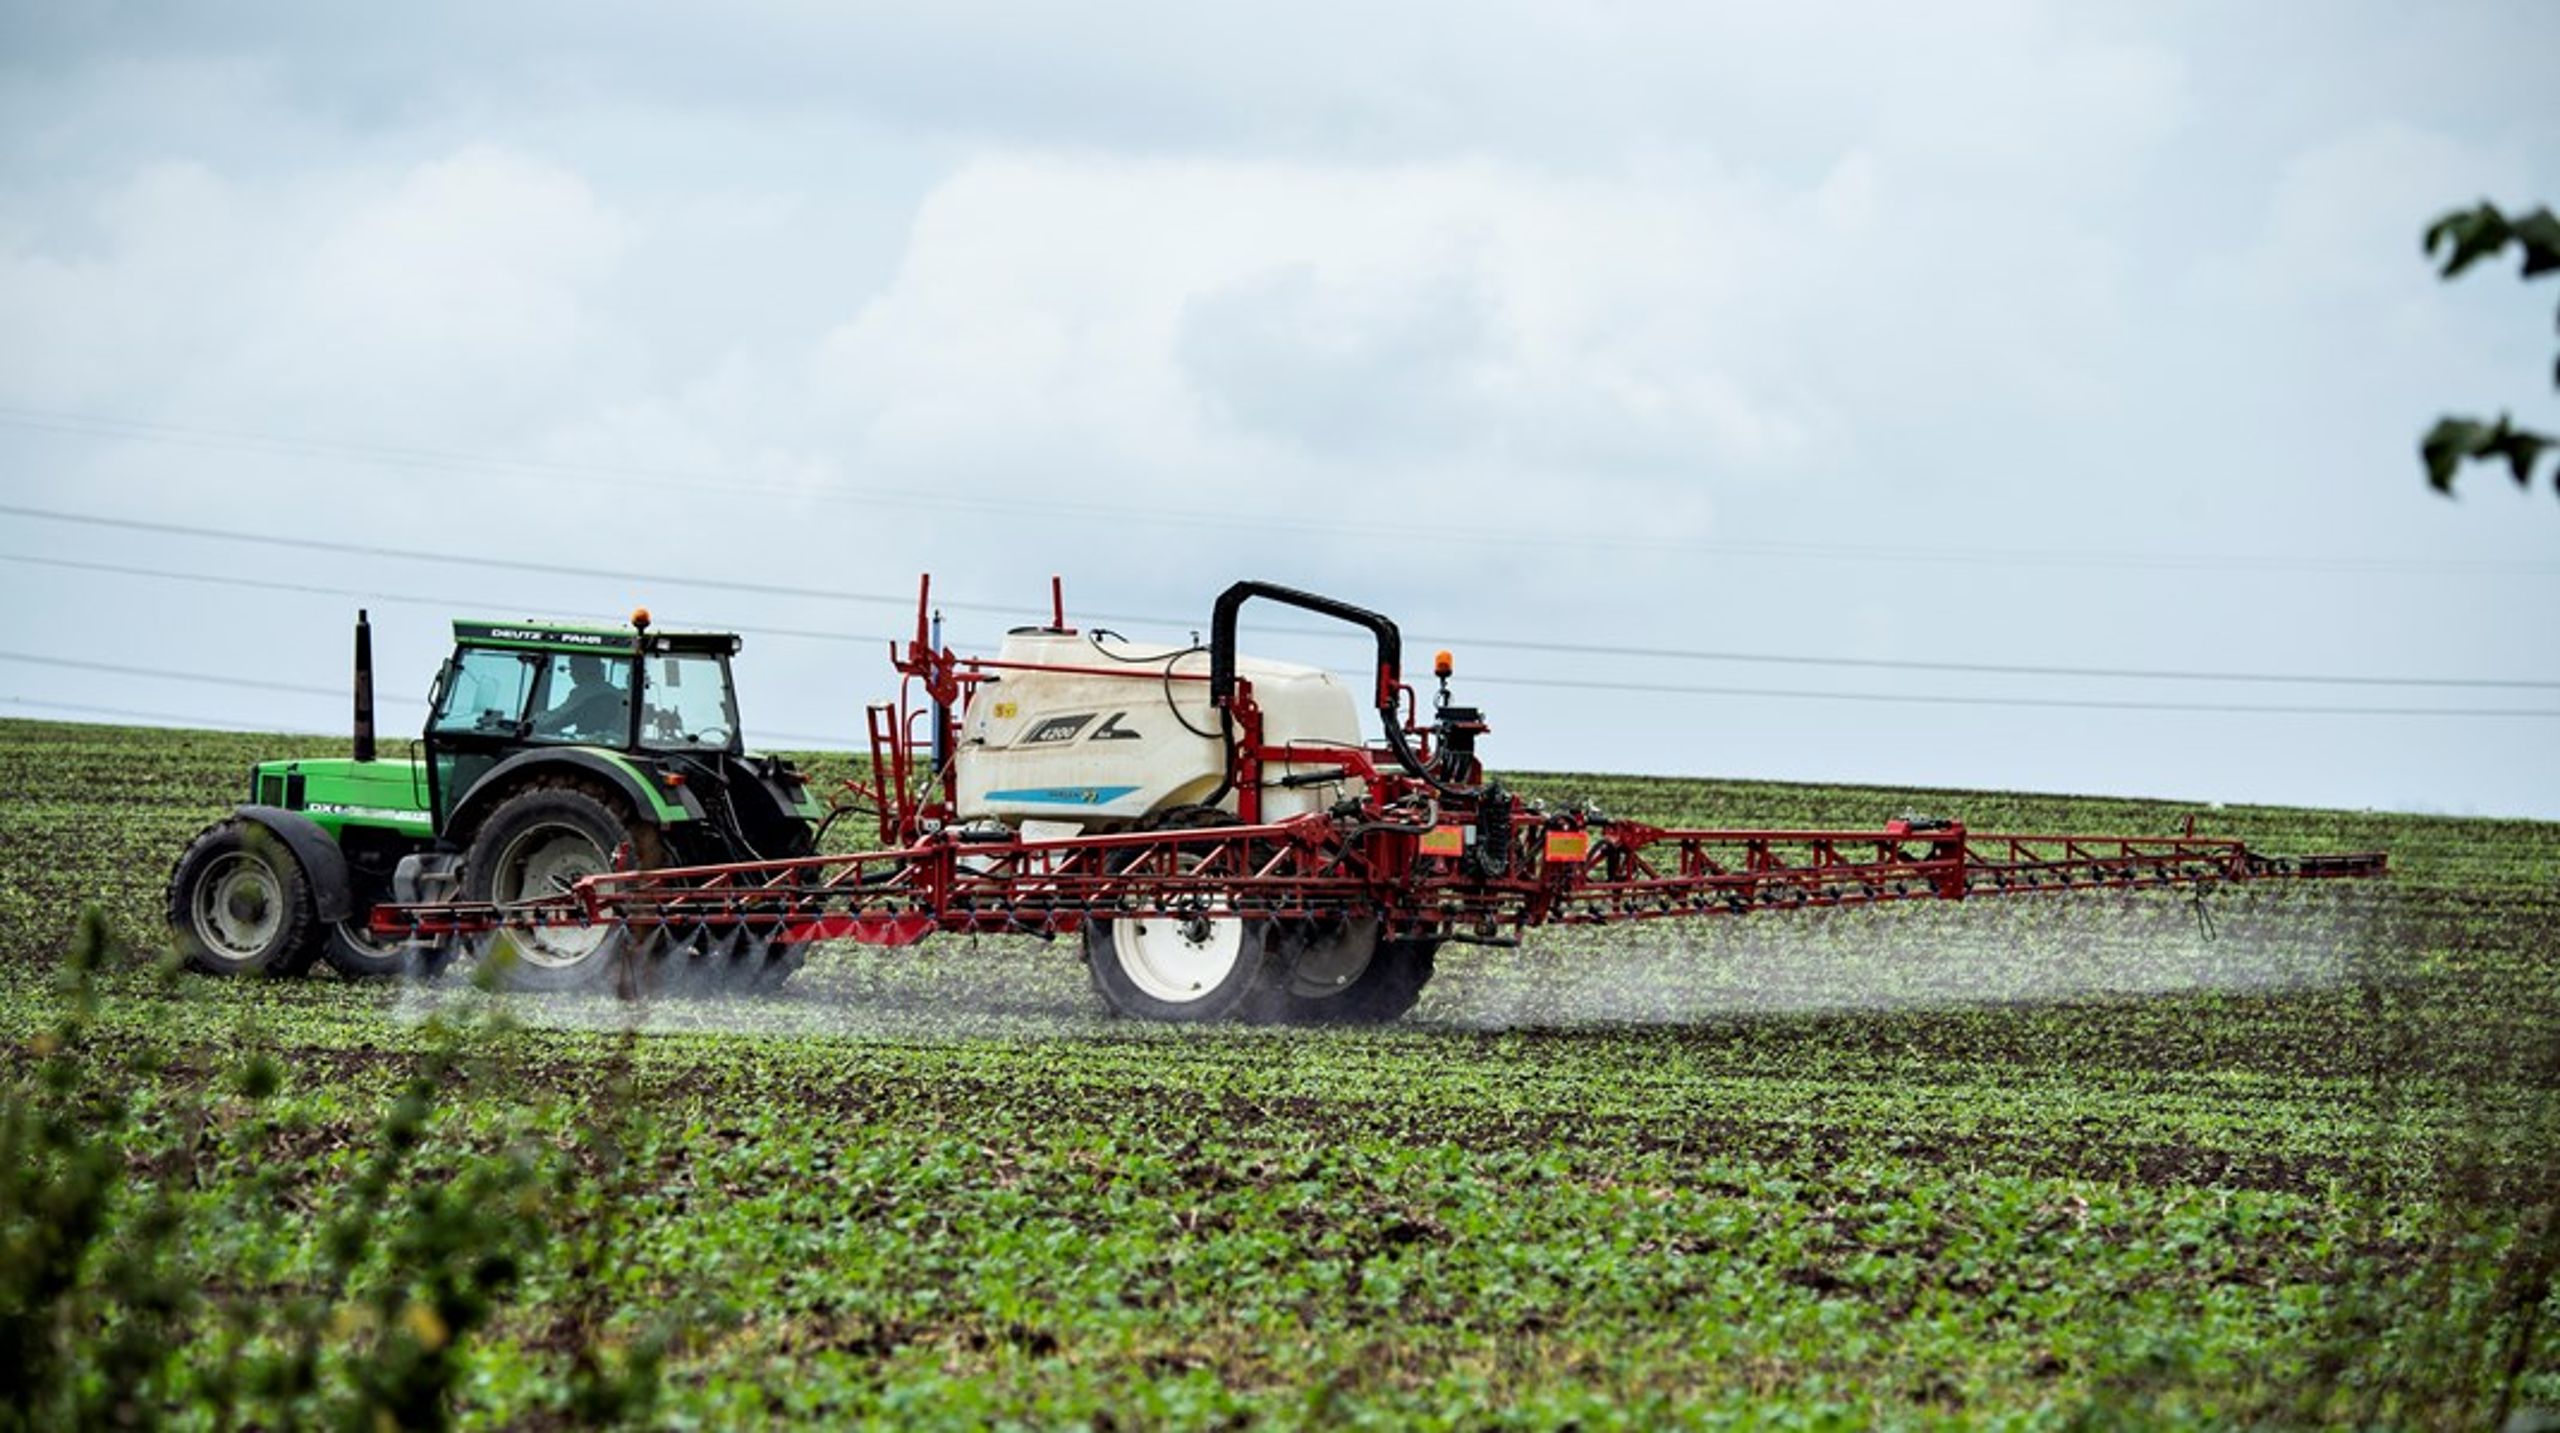 EU har en målsætning om, at landbrugets pesticidforbrug skal halveres inden 2030. Men EU's langsommelige godkendelsesprocedurer kan spænde ben for ny teknologi, skriver en række landbrugsvirksomheder og -aktører.